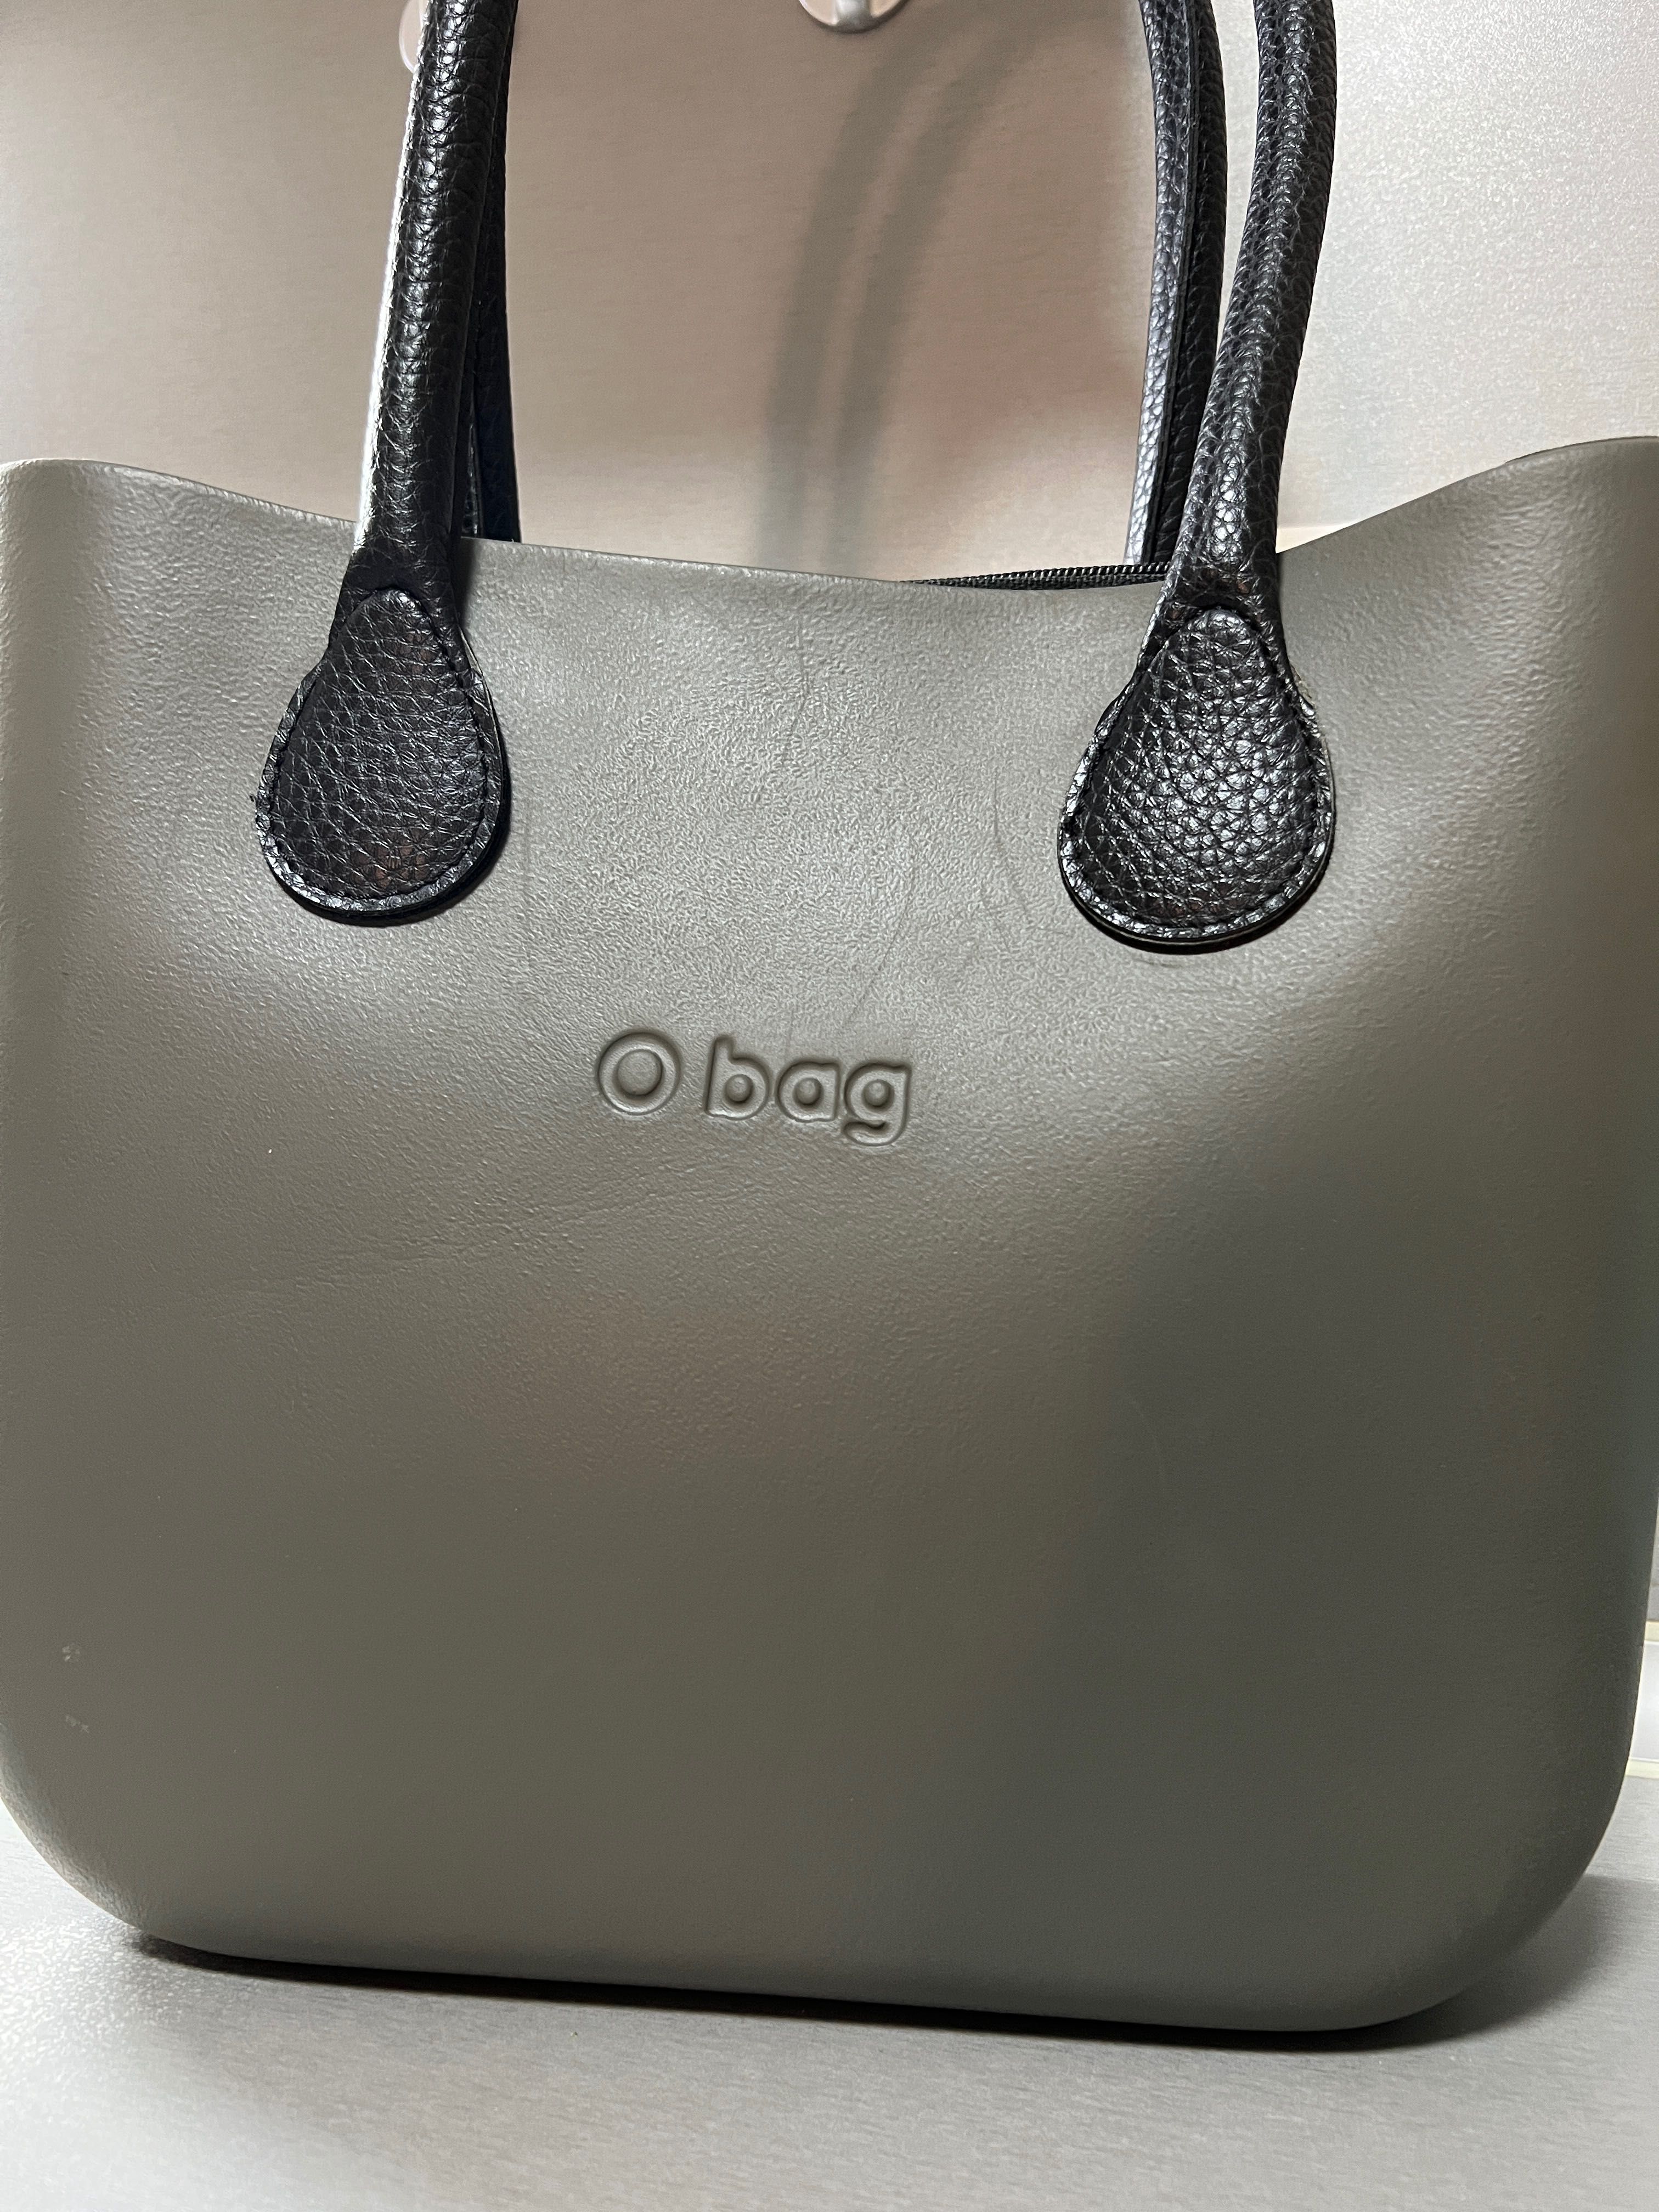 Оригинална чанта O bag mini